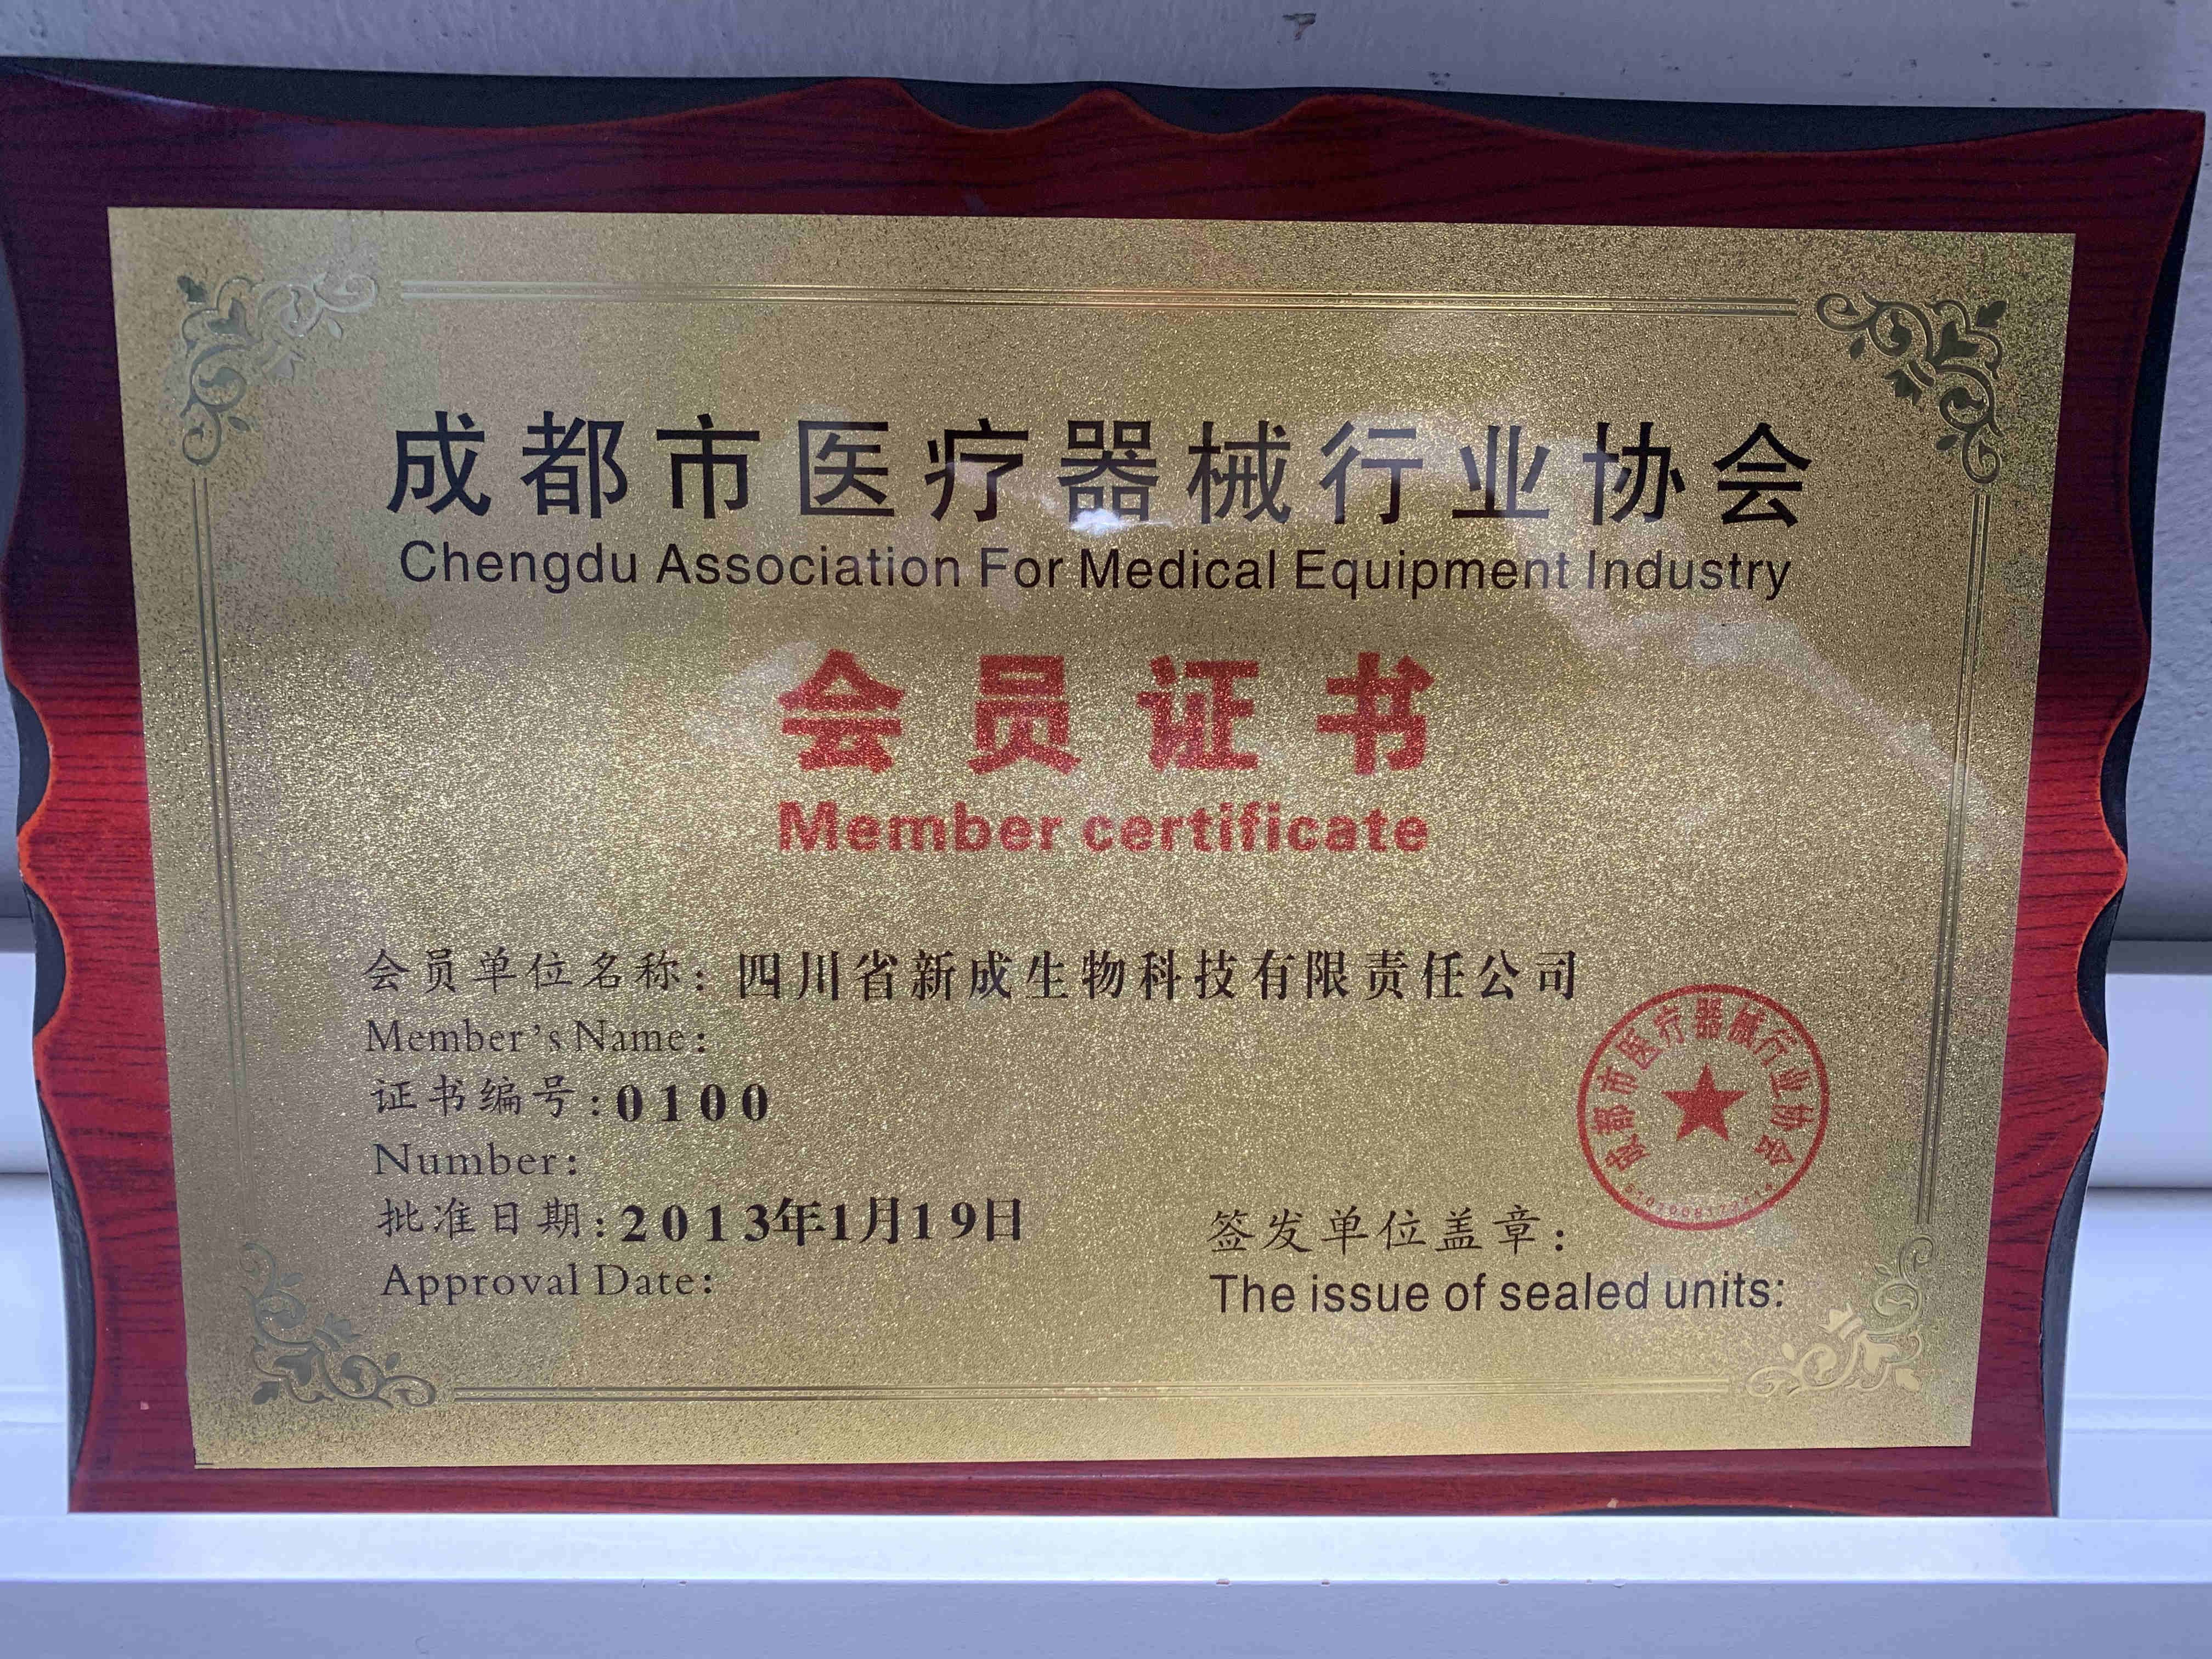 ประเทศจีน Sichuan Xincheng Biological Co., Ltd. รับรอง